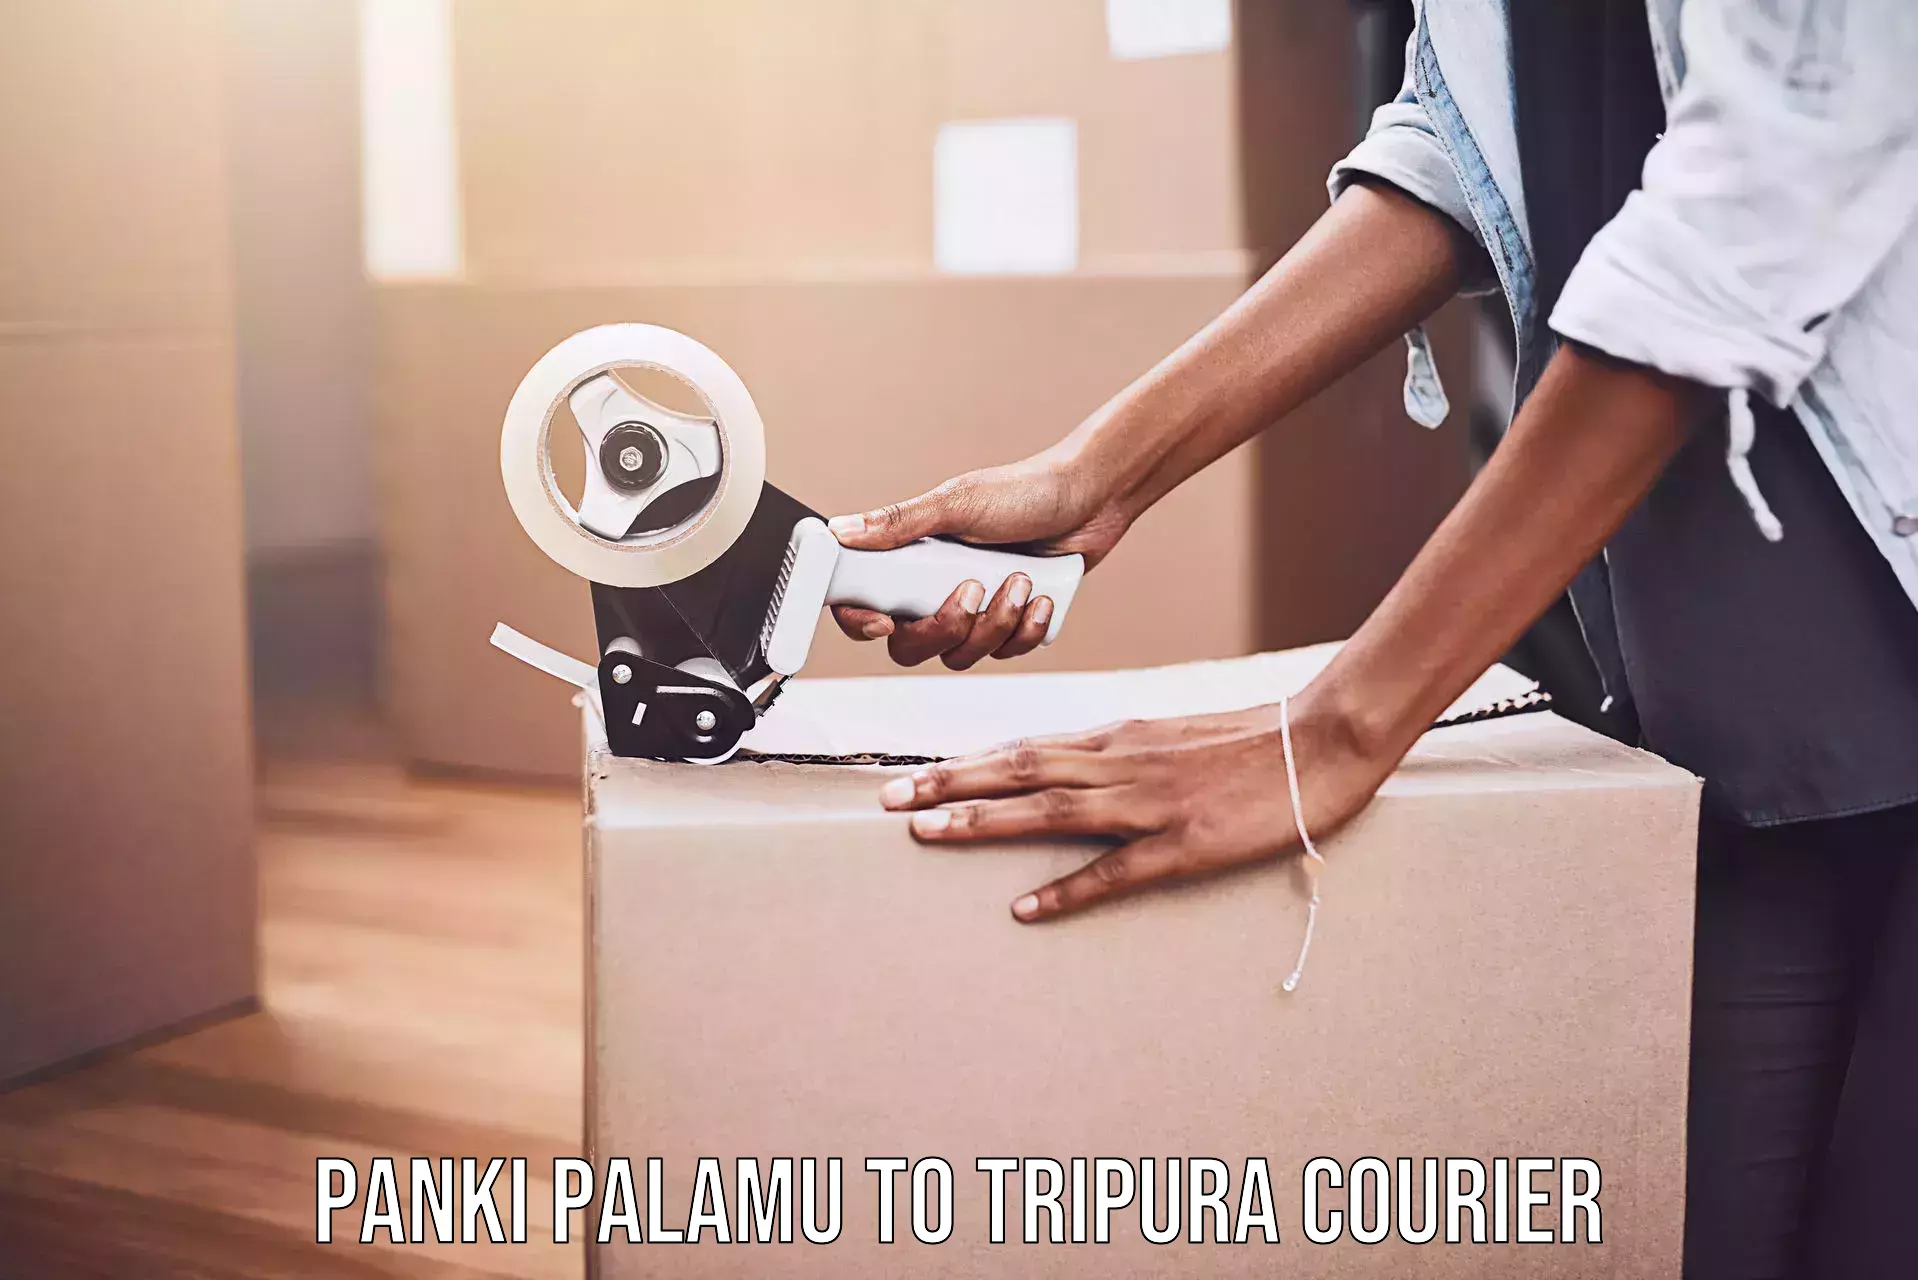 Premium courier services Panki Palamu to Tripura